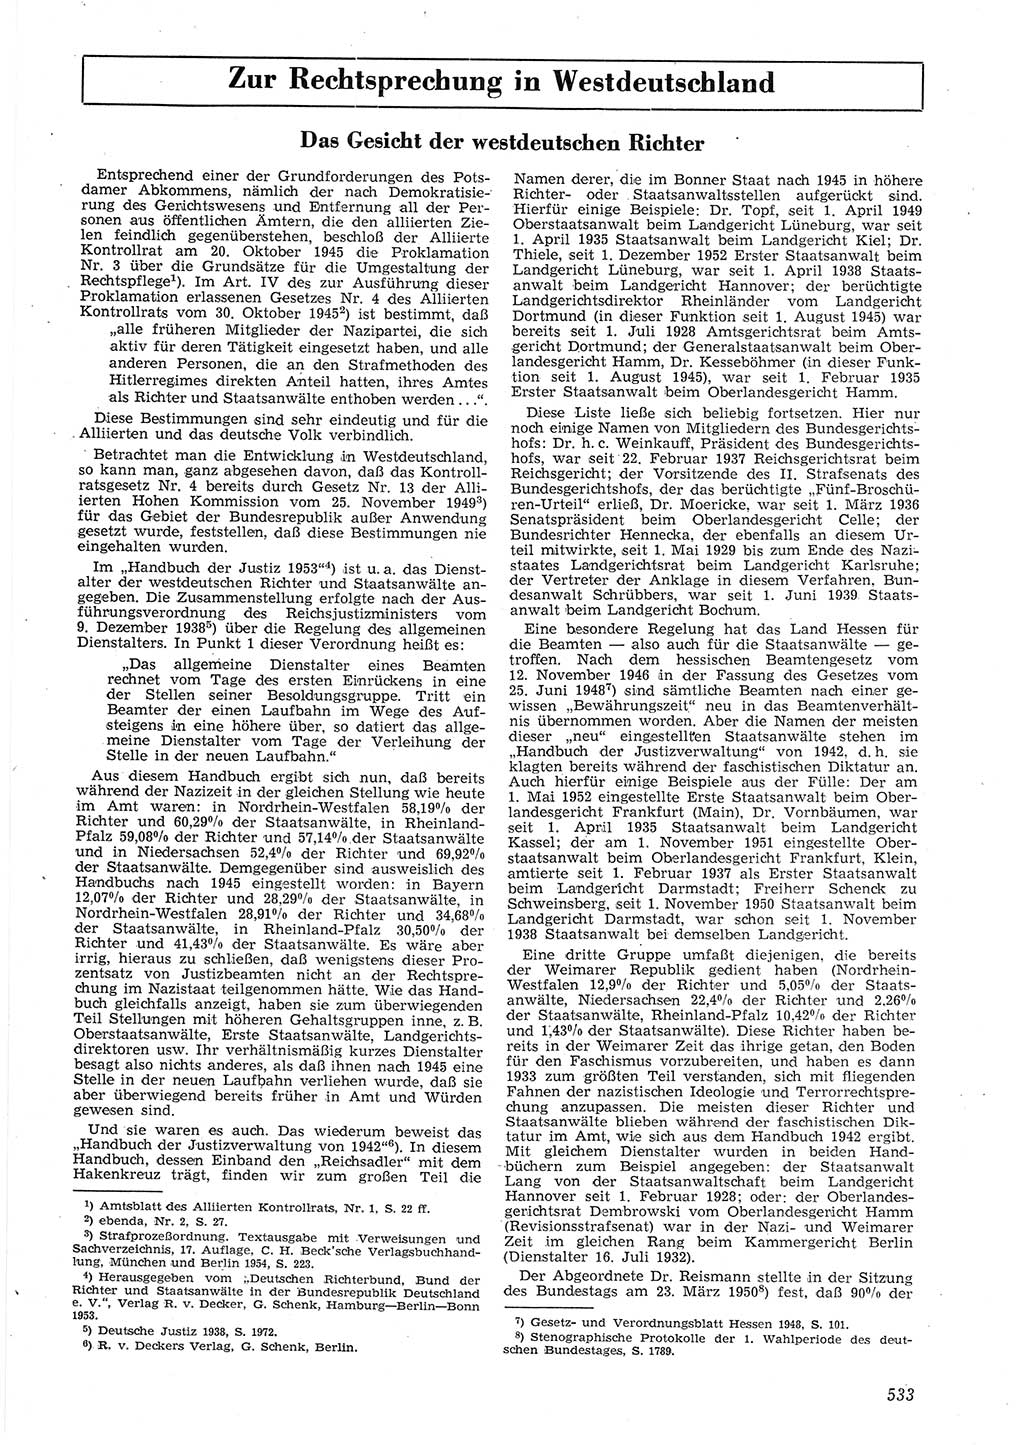 Neue Justiz (NJ), Zeitschrift für Recht und Rechtswissenschaft [Deutsche Demokratische Republik (DDR)], 8. Jahrgang 1954, Seite 533 (NJ DDR 1954, S. 533)